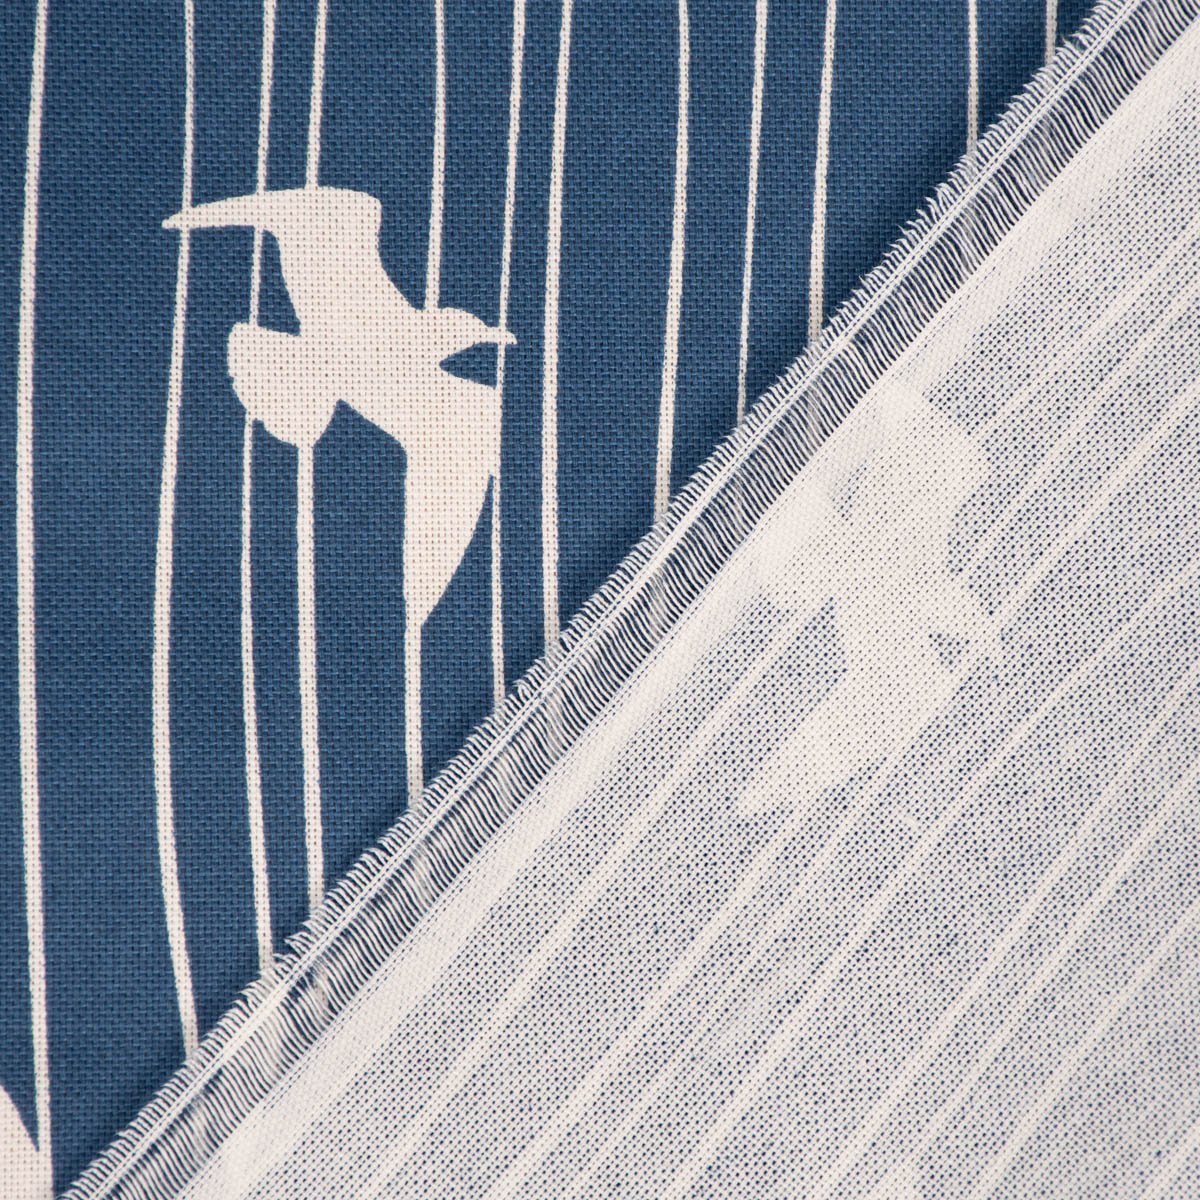 SCHÖNER blau SCHÖNER Tischdecke handmade LEBEN. Tischdecke Seagull Stripe Möwen LEBEN. Streifen Iconic w,